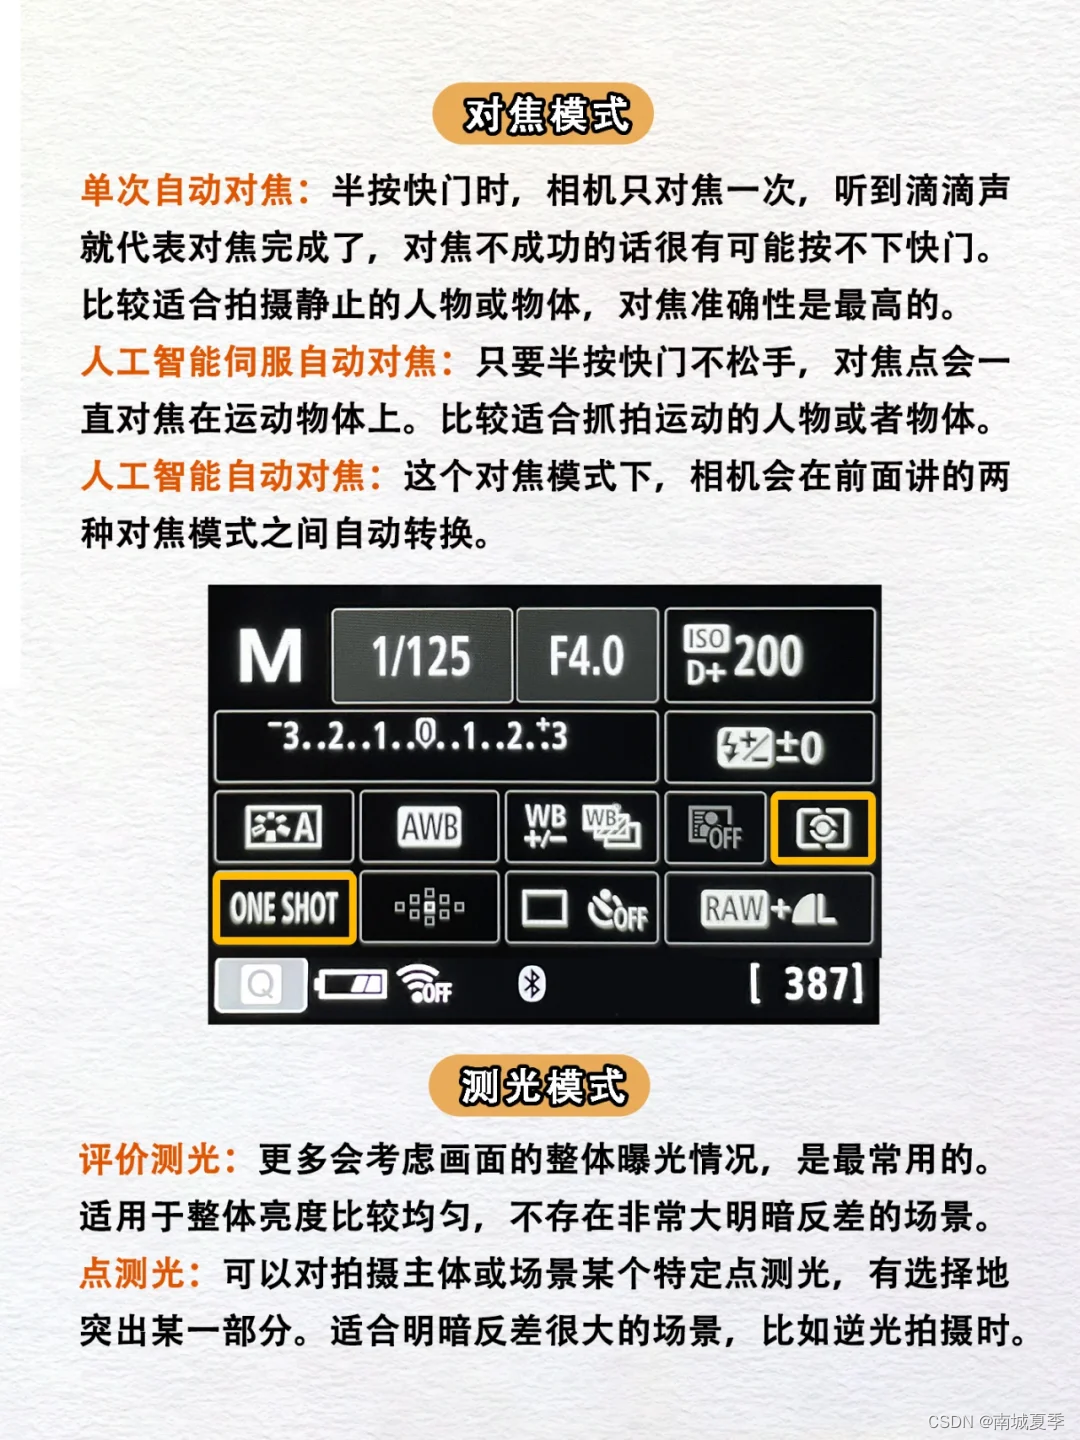 新手摄影笔记-基础知识-按键和参数说明【1】